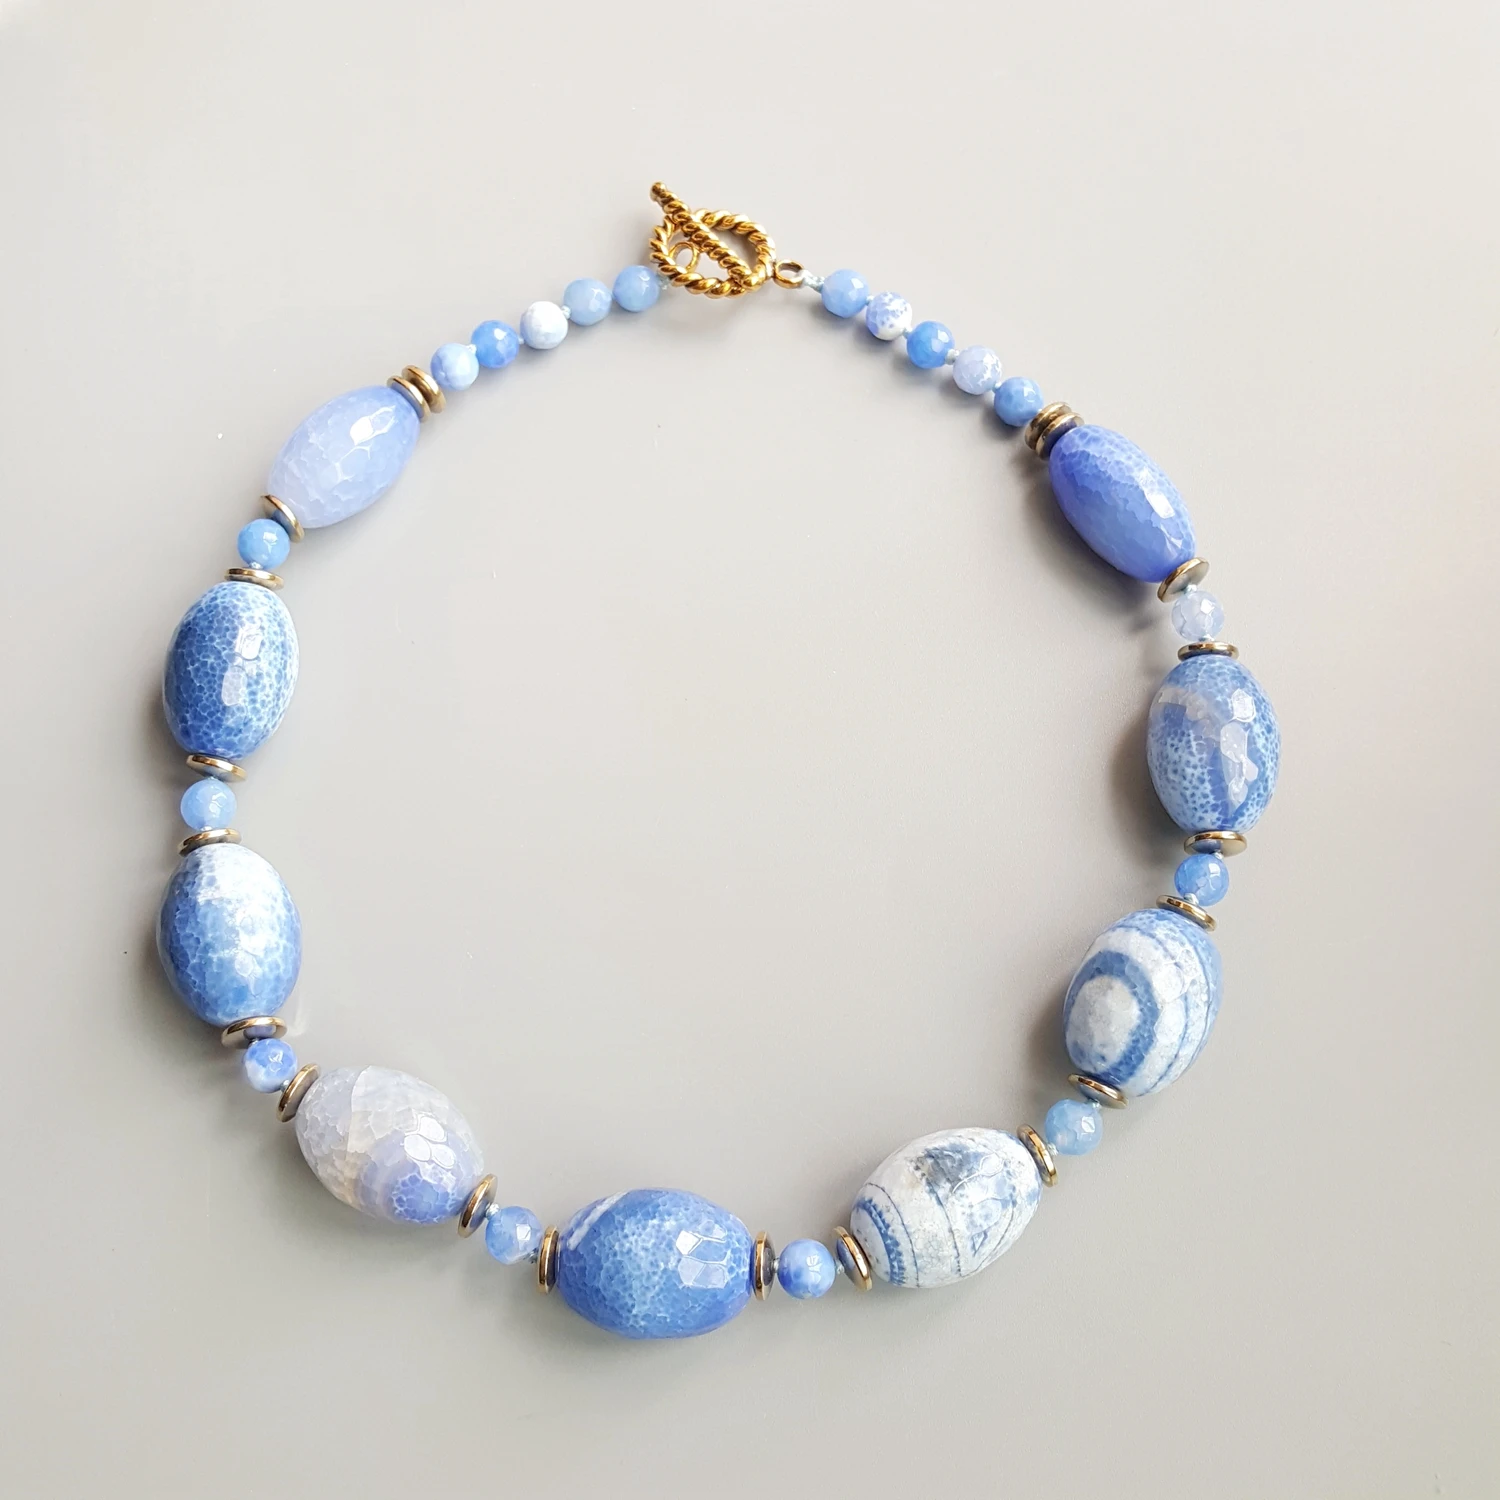 Lii Ji настоящий агат синий камень гематит бусины ожерелье застежка 53 см